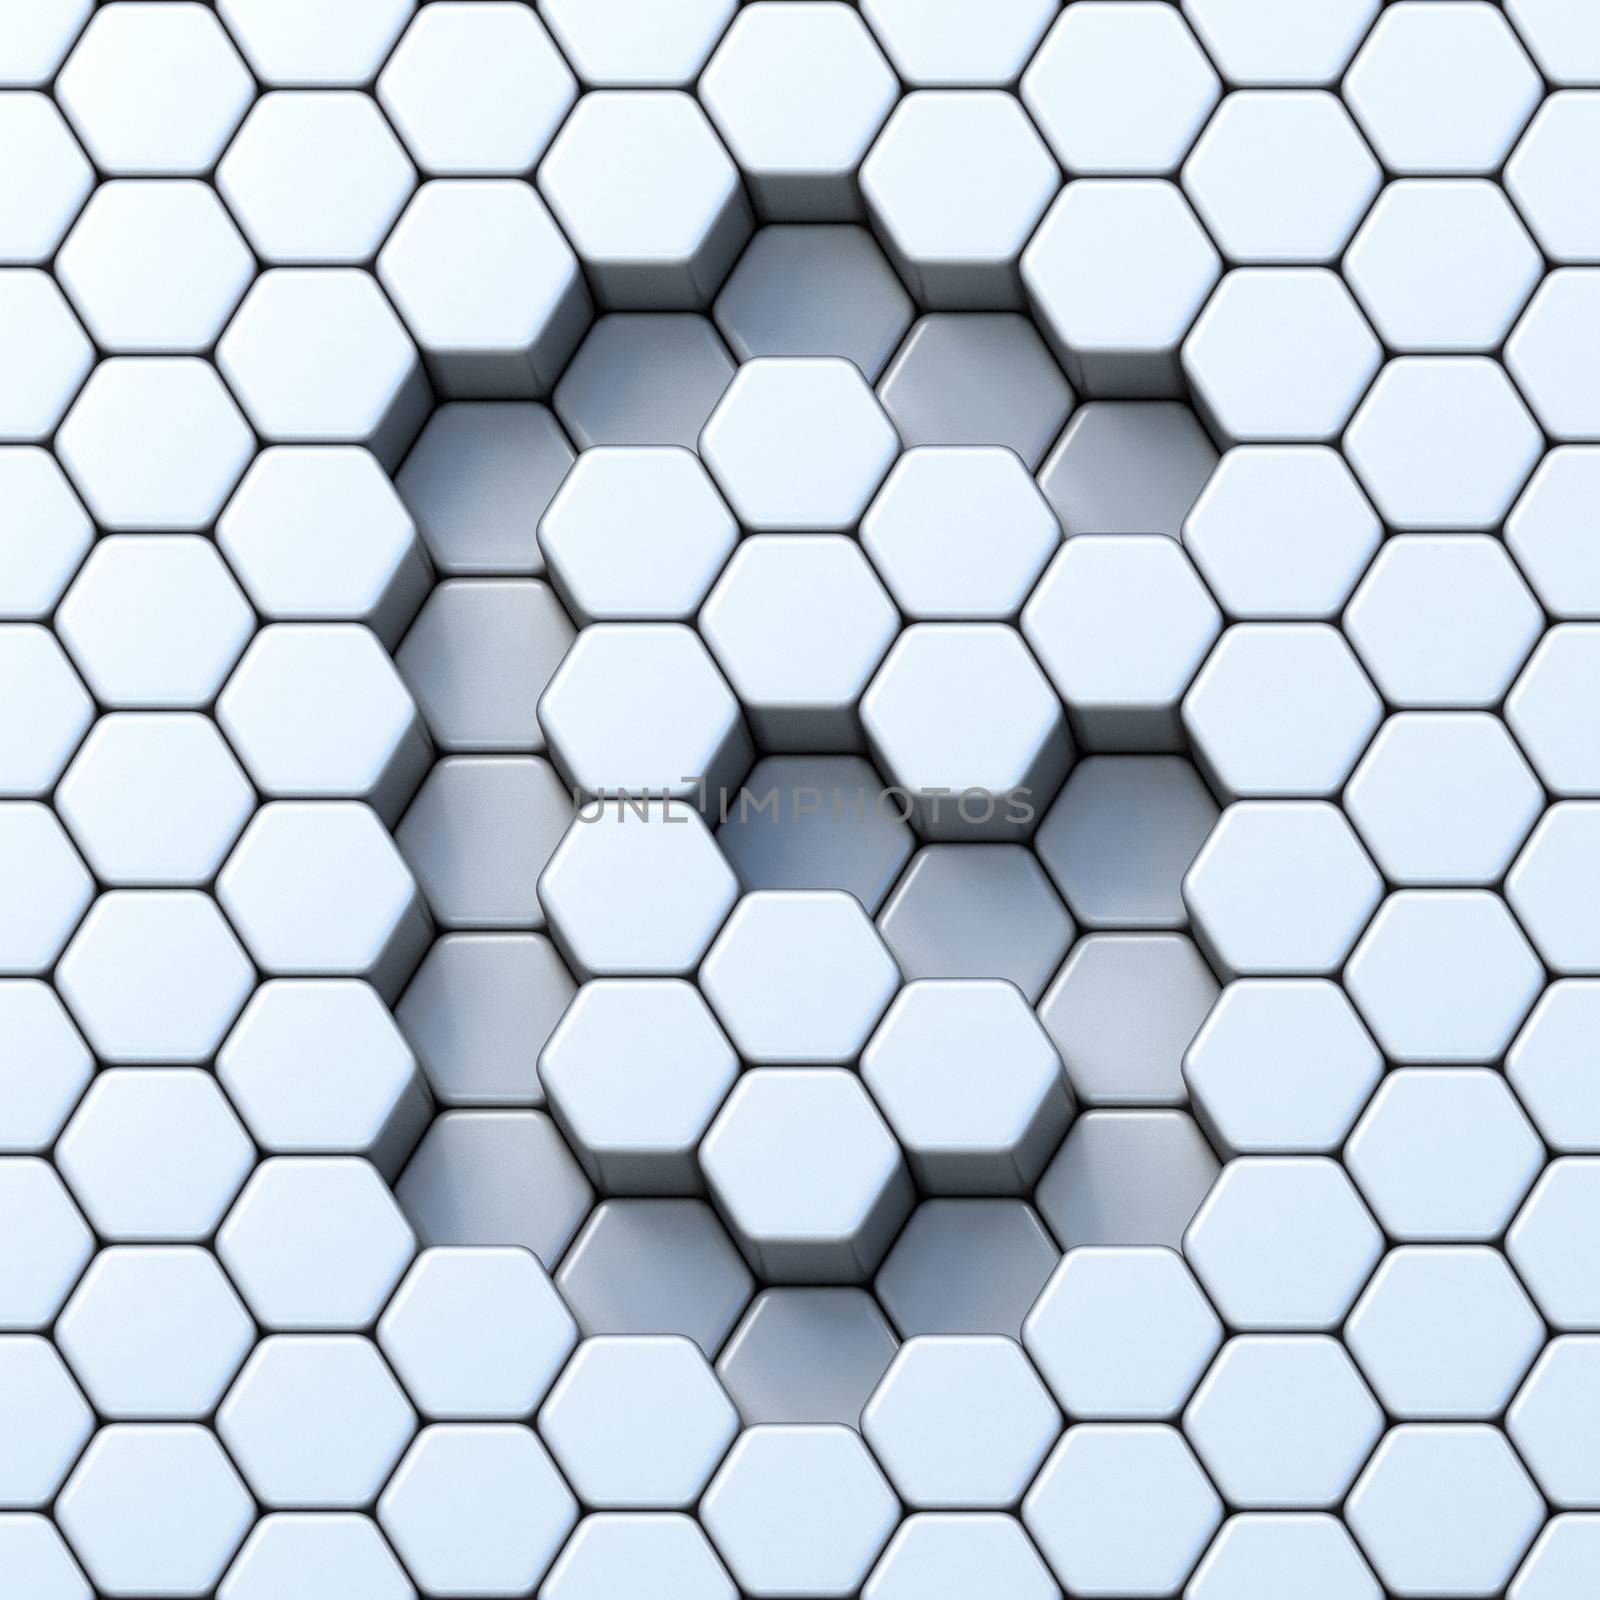 Hexagonal grid letter G 3D render illustration